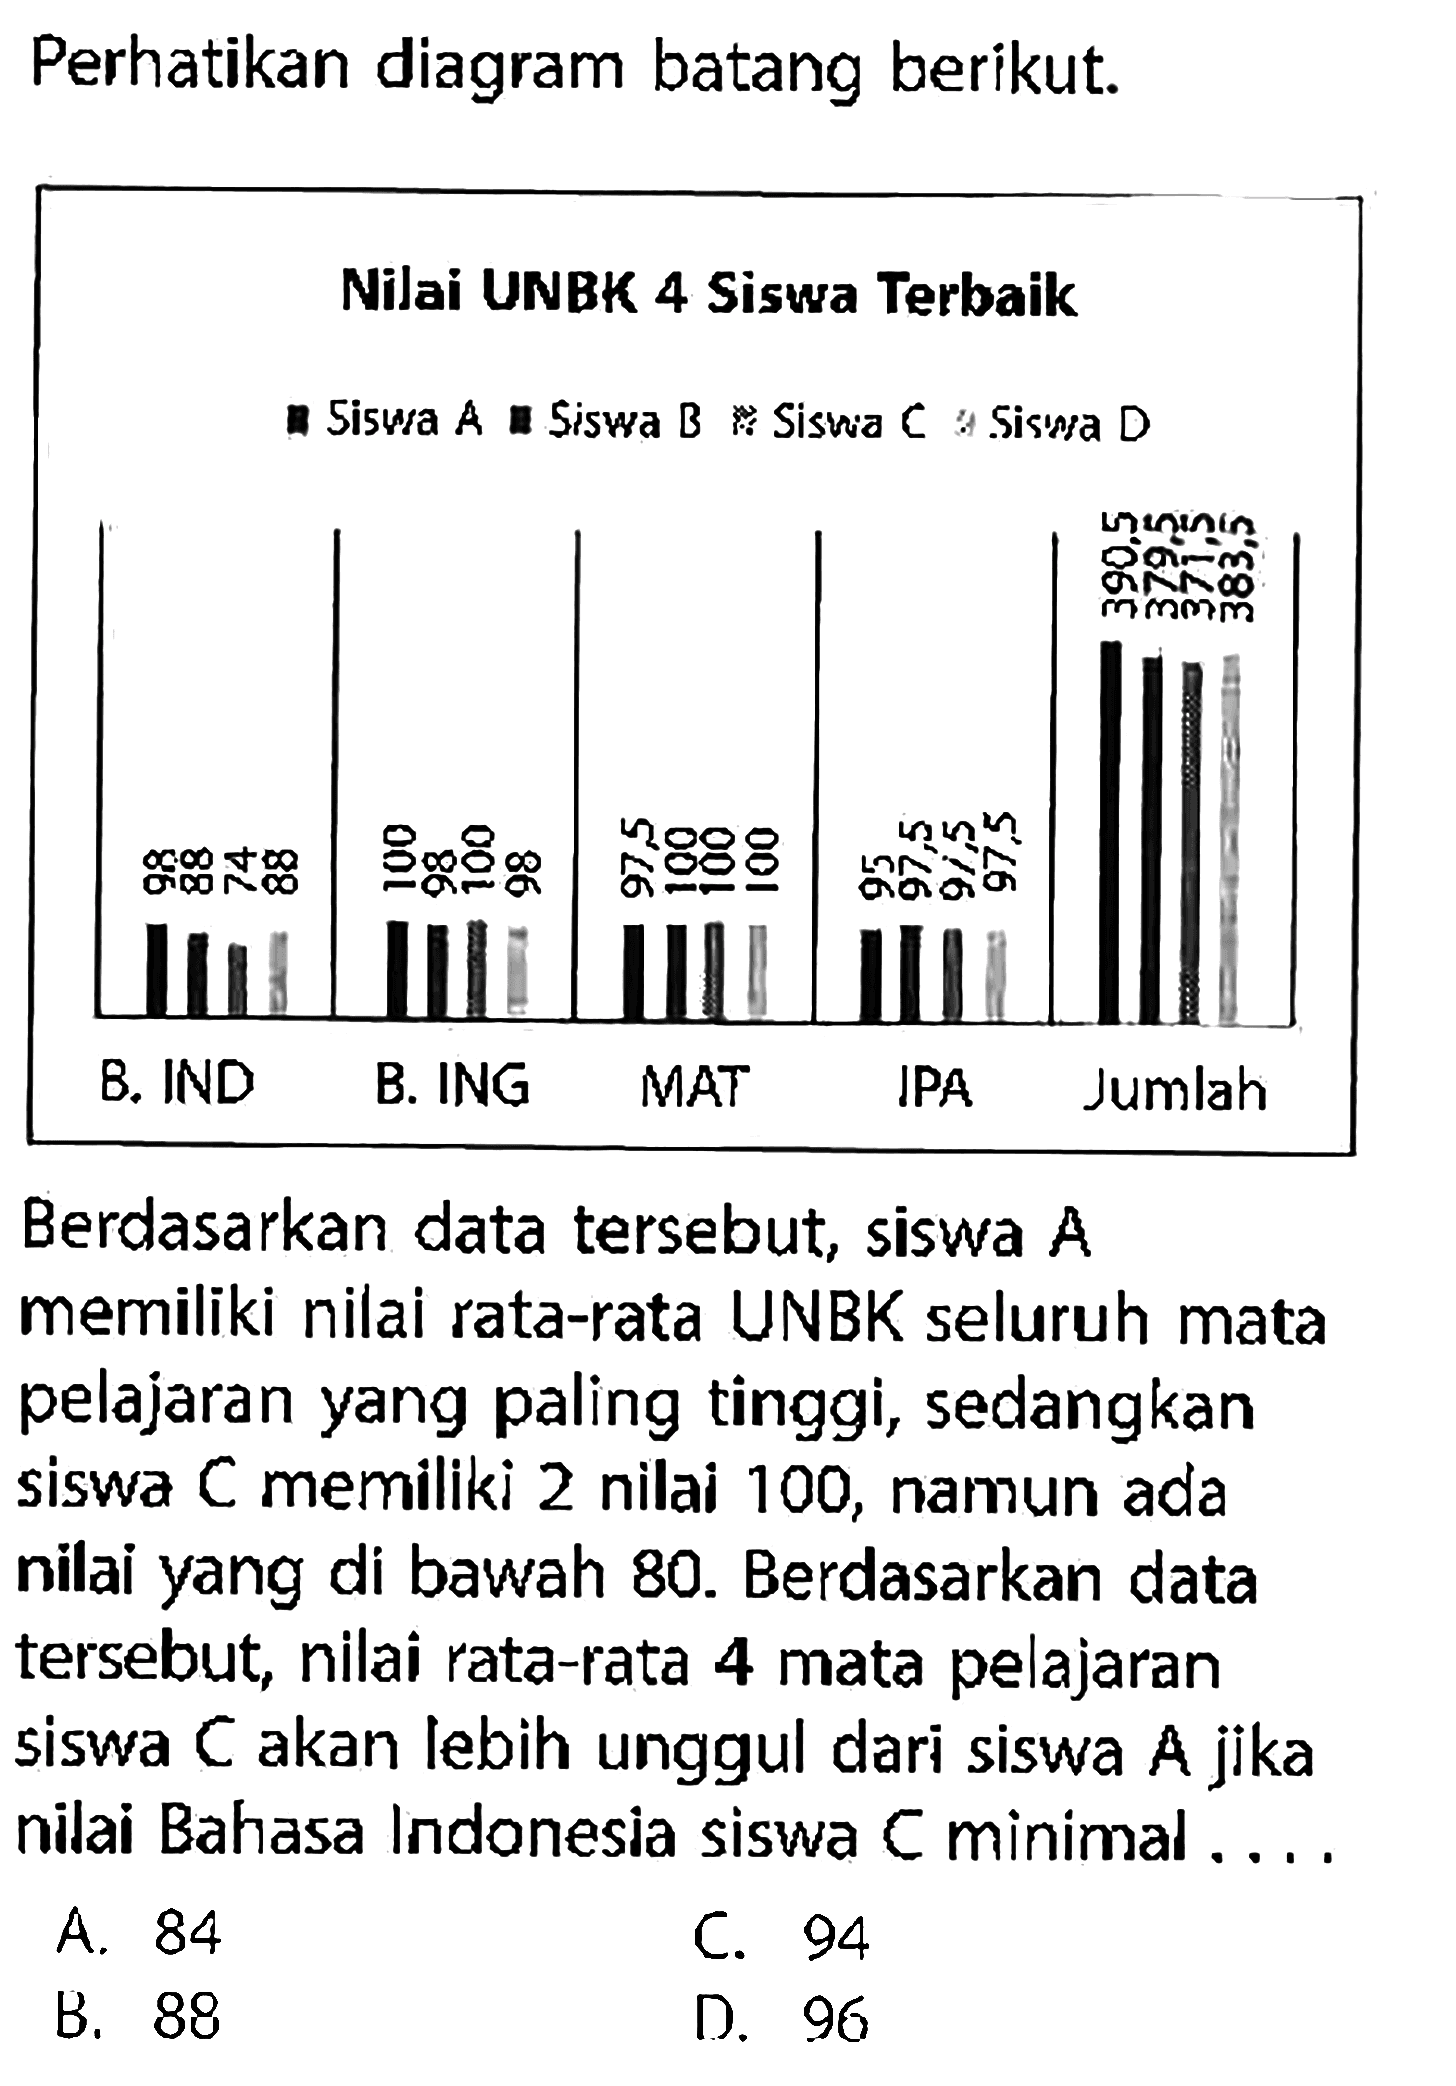 Perhatikan diagram batang berikut.Berdasarkan data tersebut, siswa A memiliki nilai rata-rata UNBK seluruh mata pelajaran yang paling tinggi, sedangkan siswa C memiliki 2 nilai 100 , namun ada nilai yang di bawah 80. Berdasarkan data tersebut, nilai rata-rata 4 mata pelajaran siswa C akan lebih unggul dari siswa A jika nilai Bahasa Indonesia siswa C minimal ....A. 84C. 94B. 88D. 96